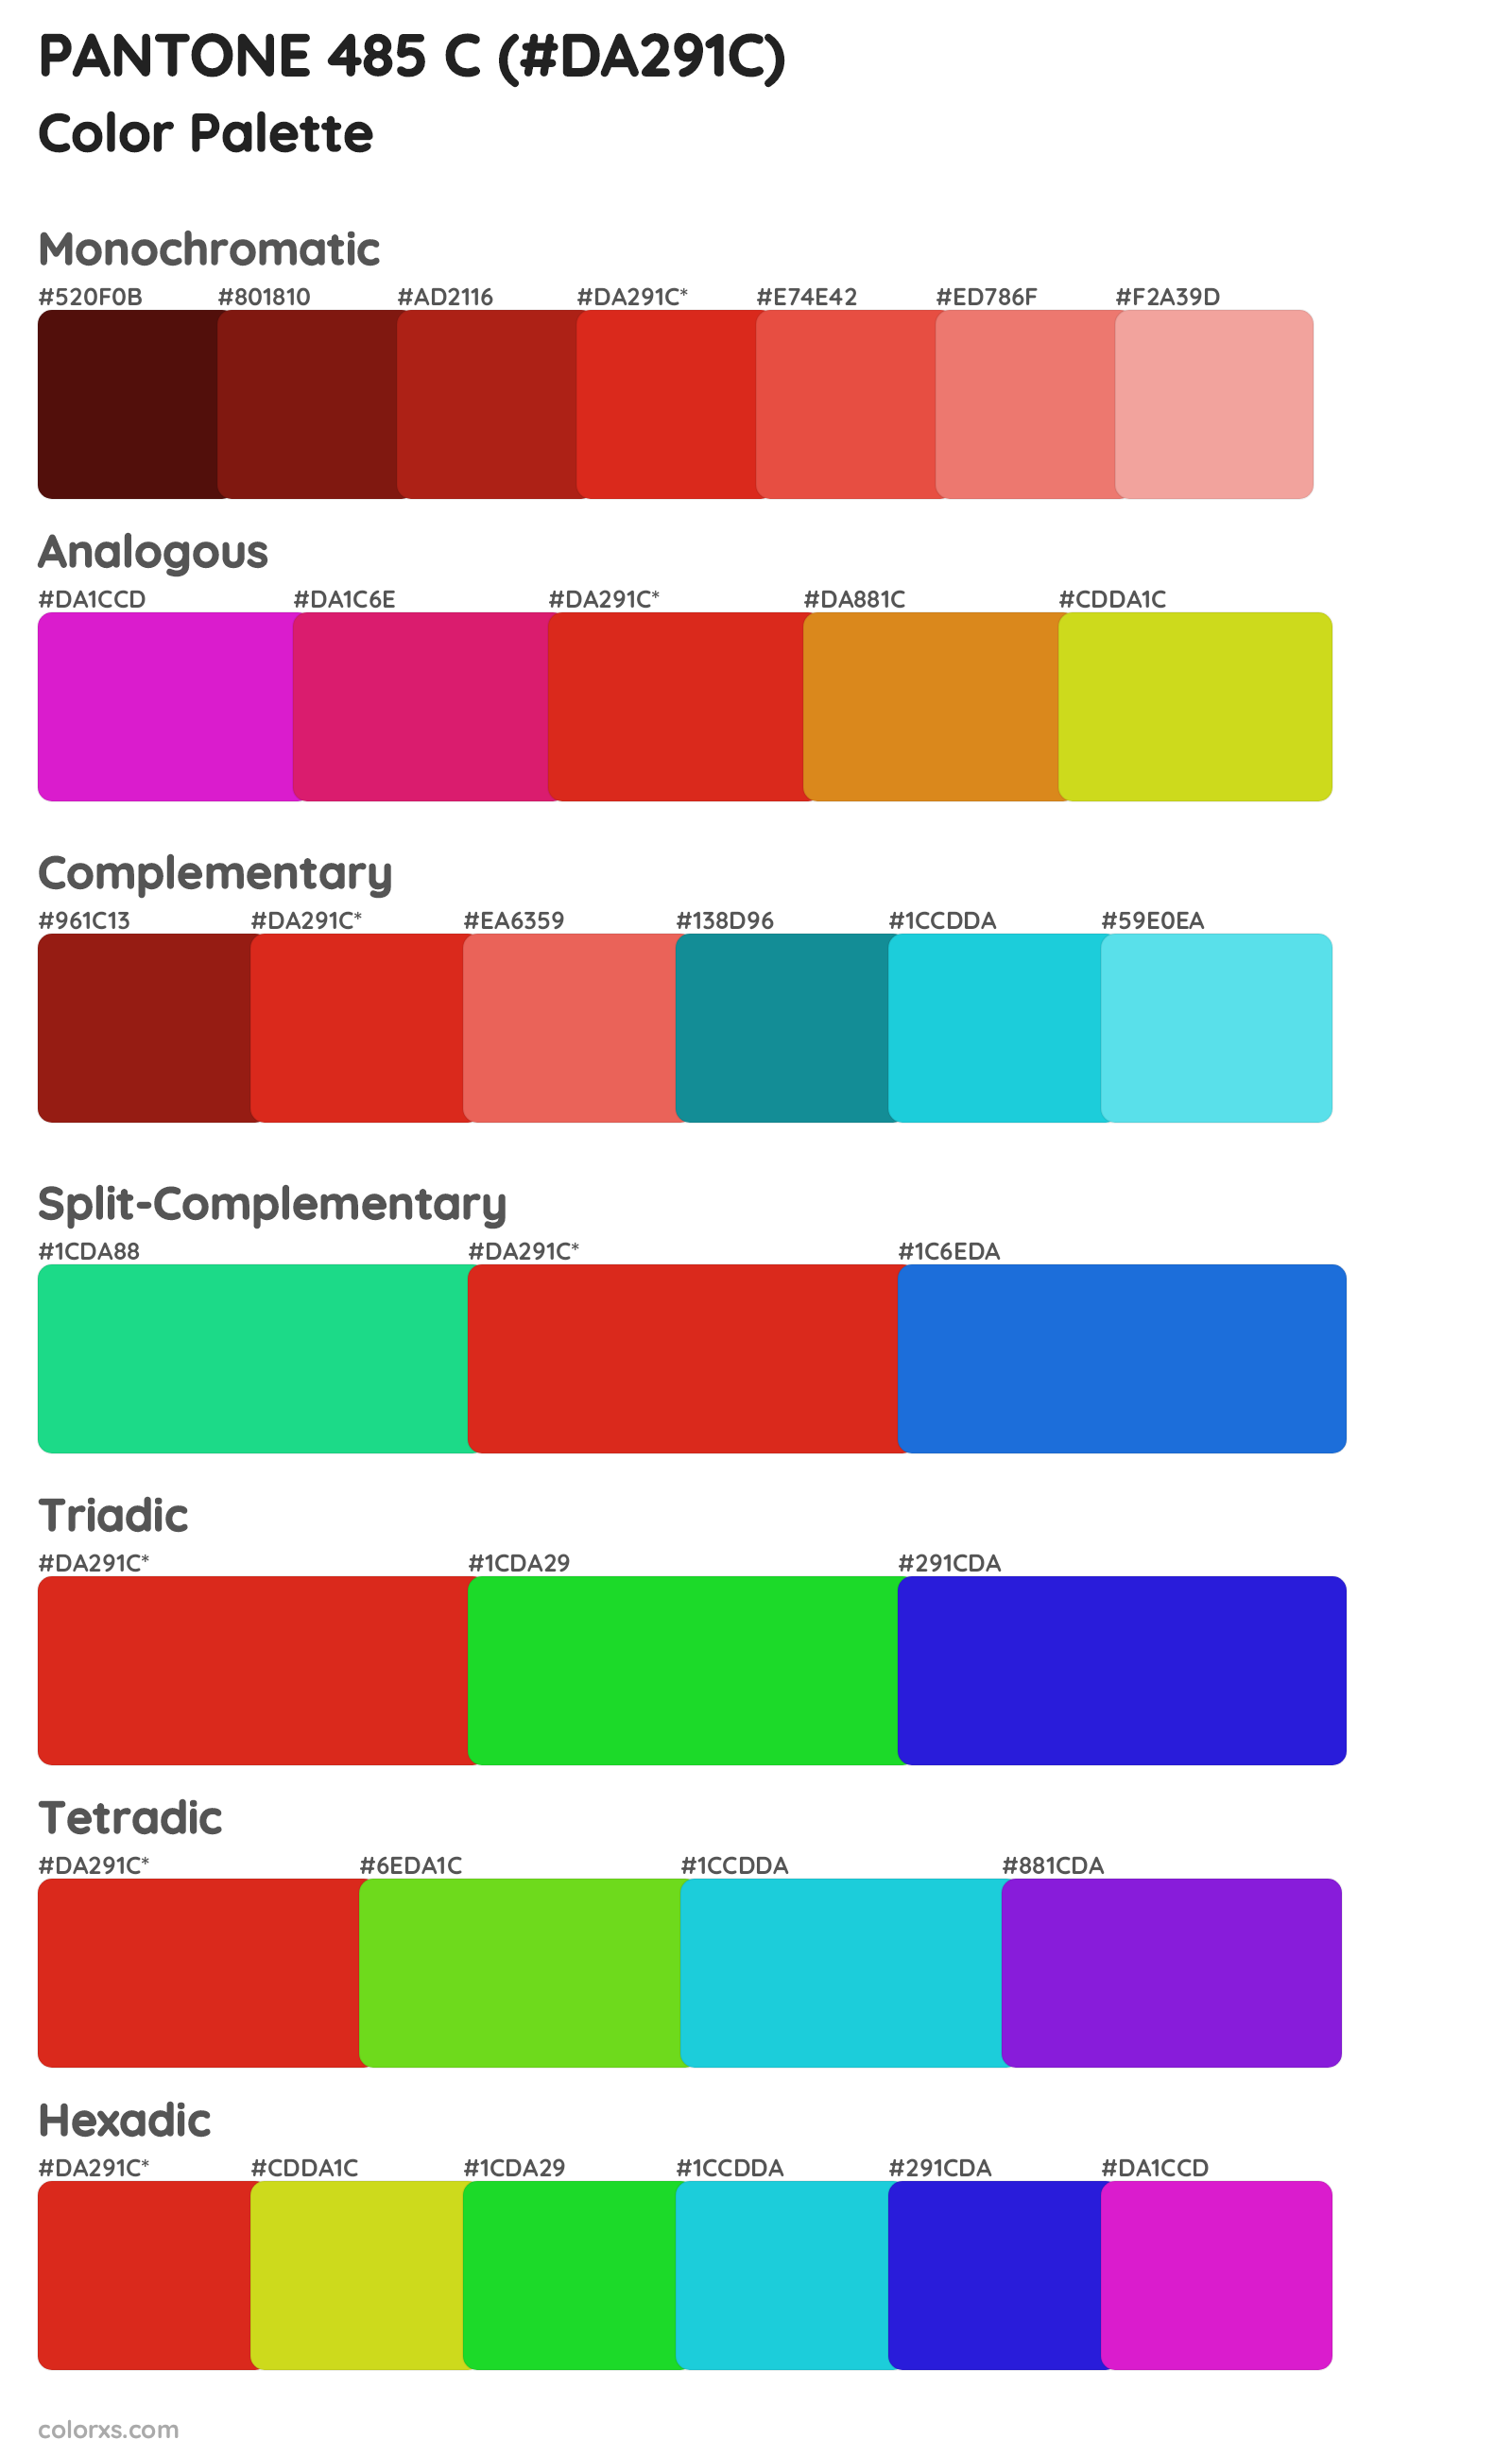 PANTONE 485 C Color Scheme Palettes